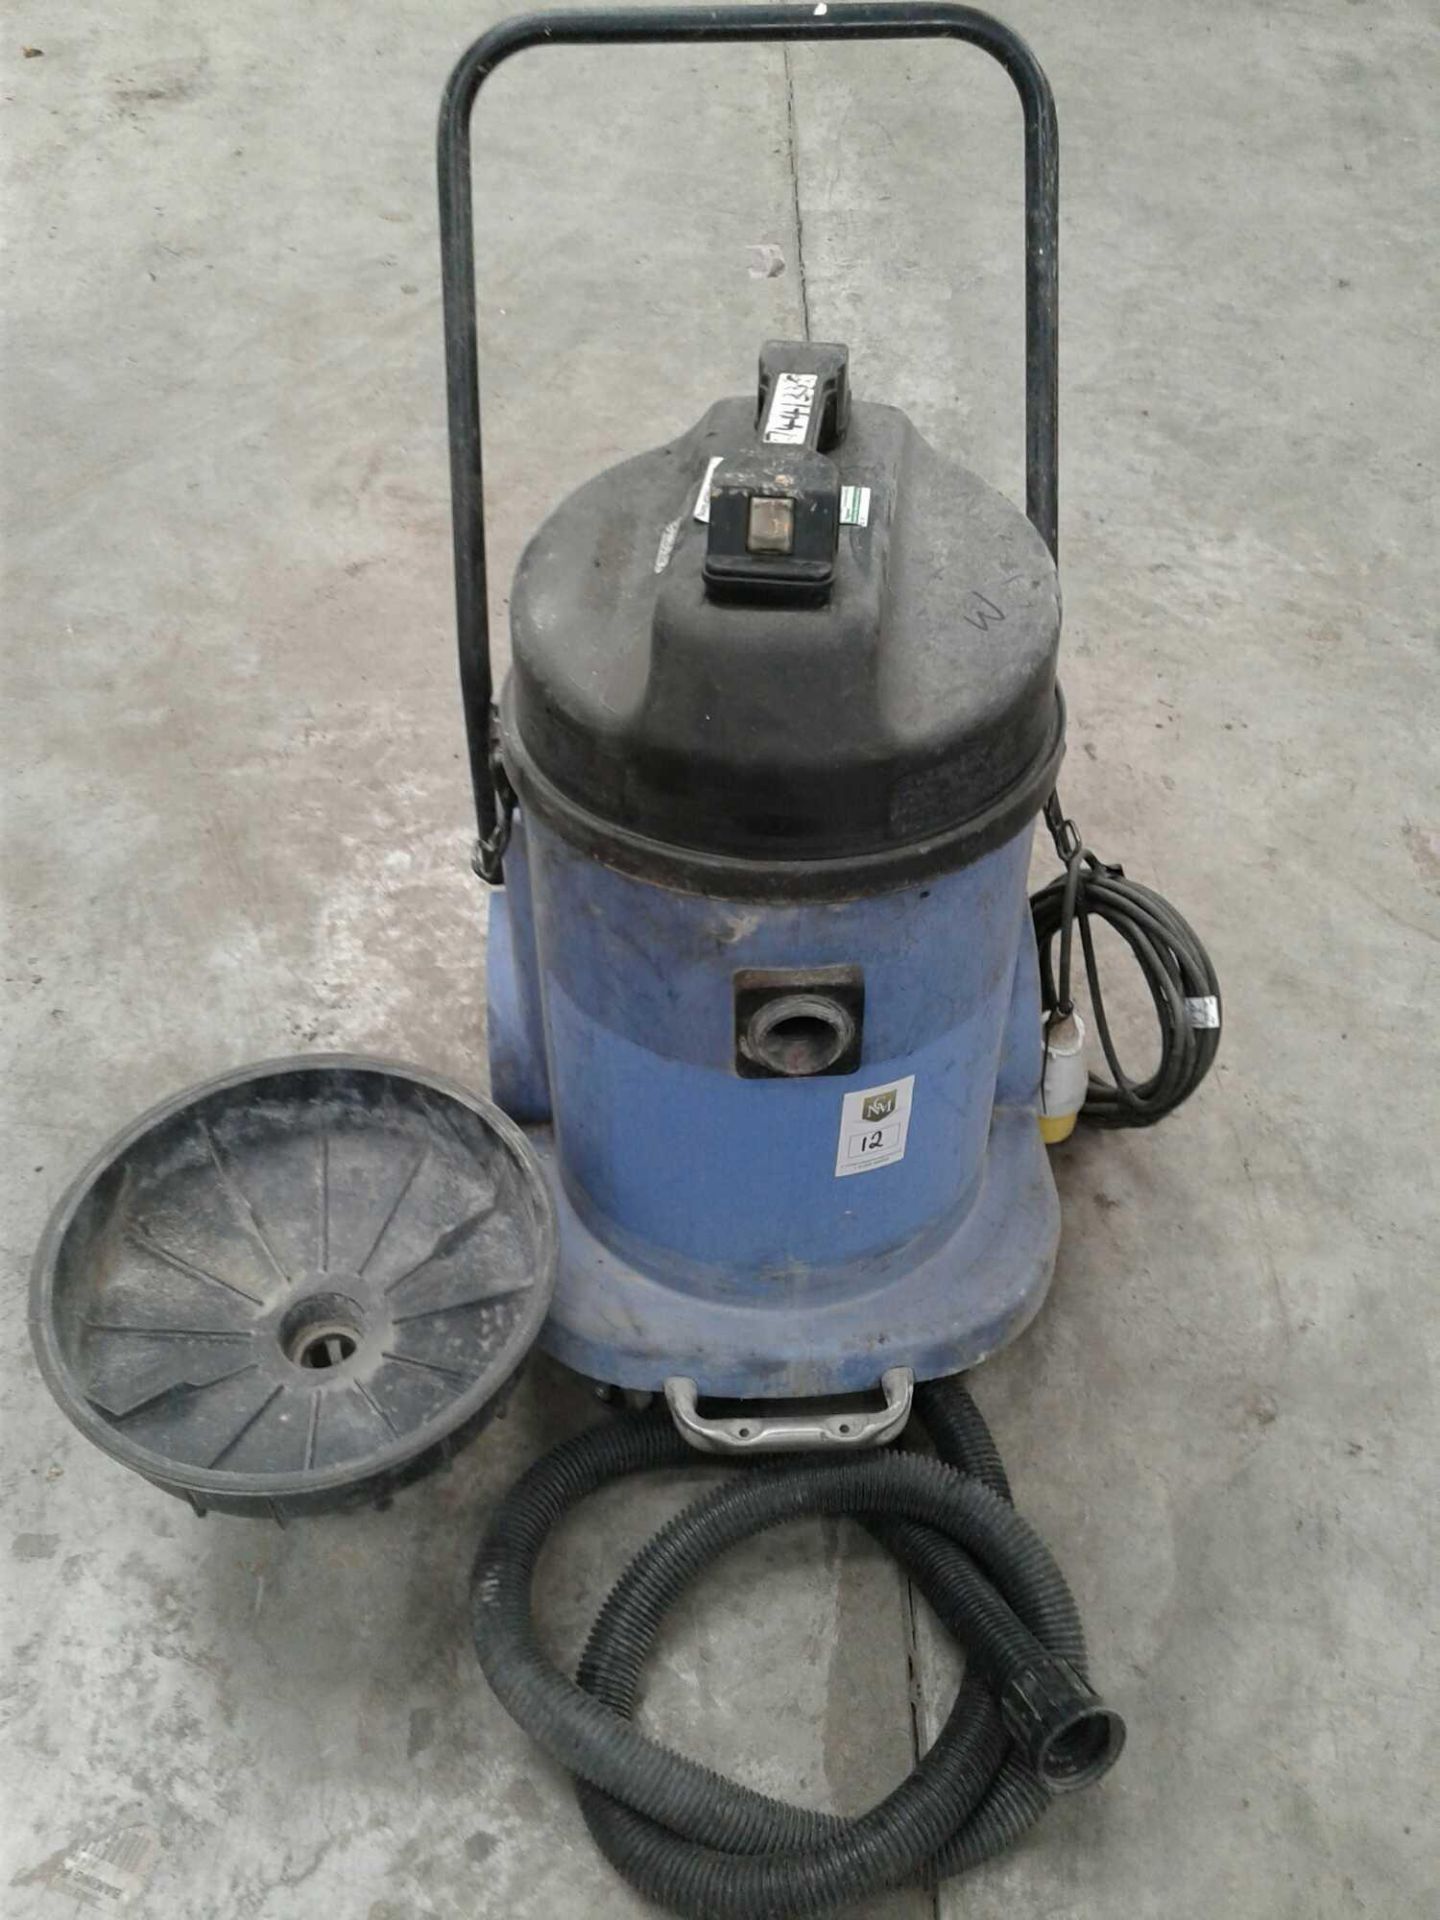 Numatic industrial vacuum cleaner 110 V 32amp